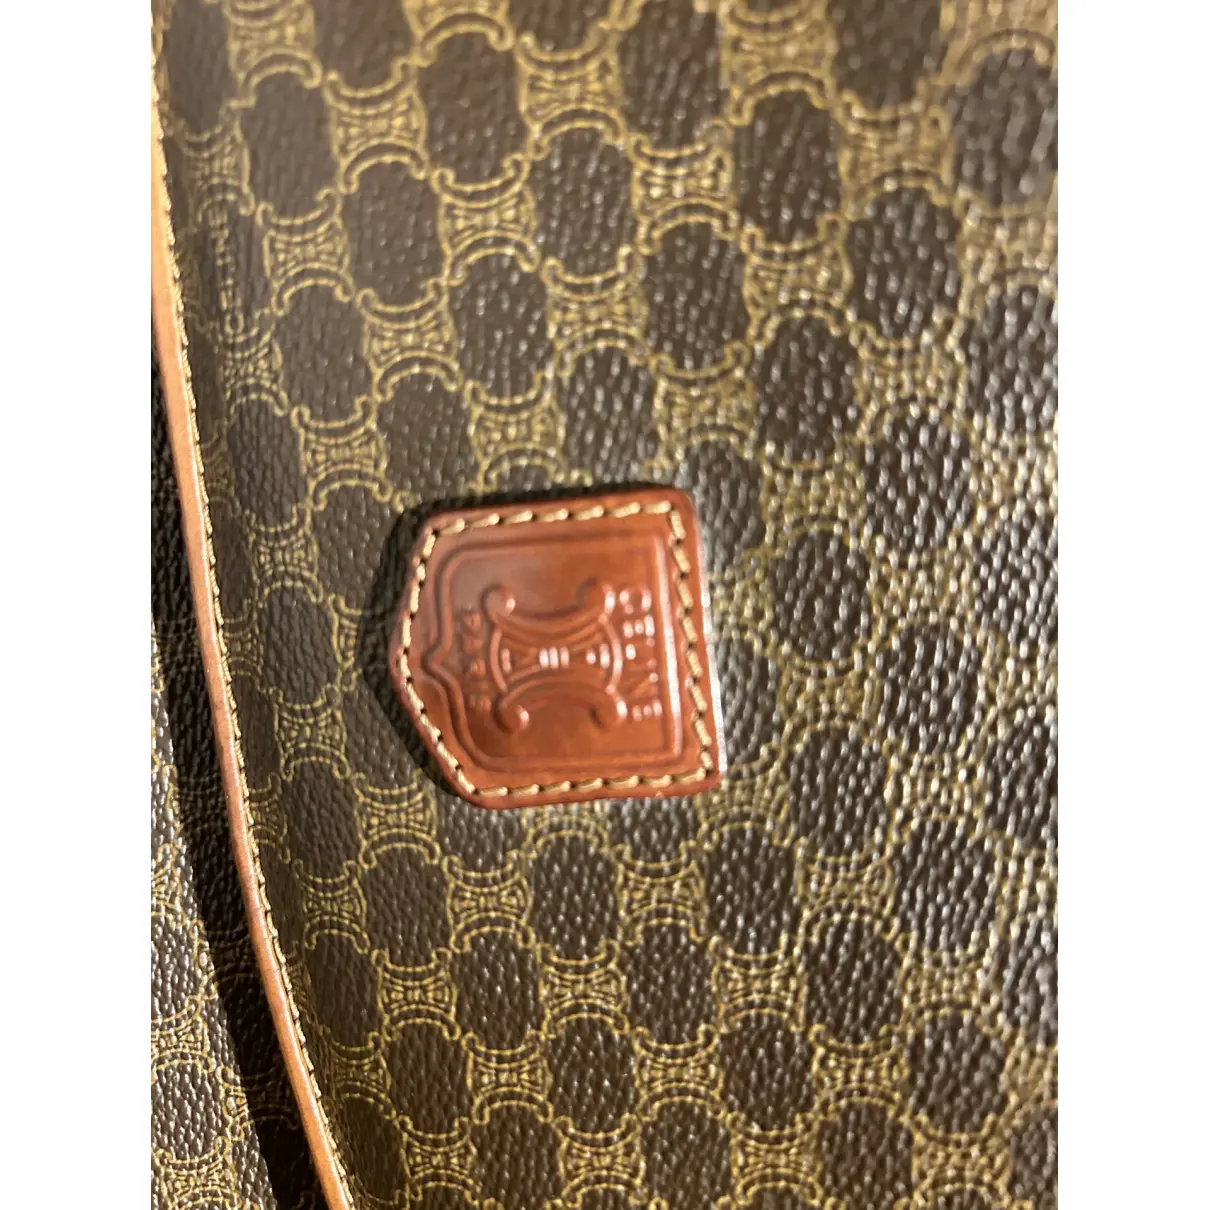 Buy Celine Triomphe Vintage leather clutch bag online - Vintage